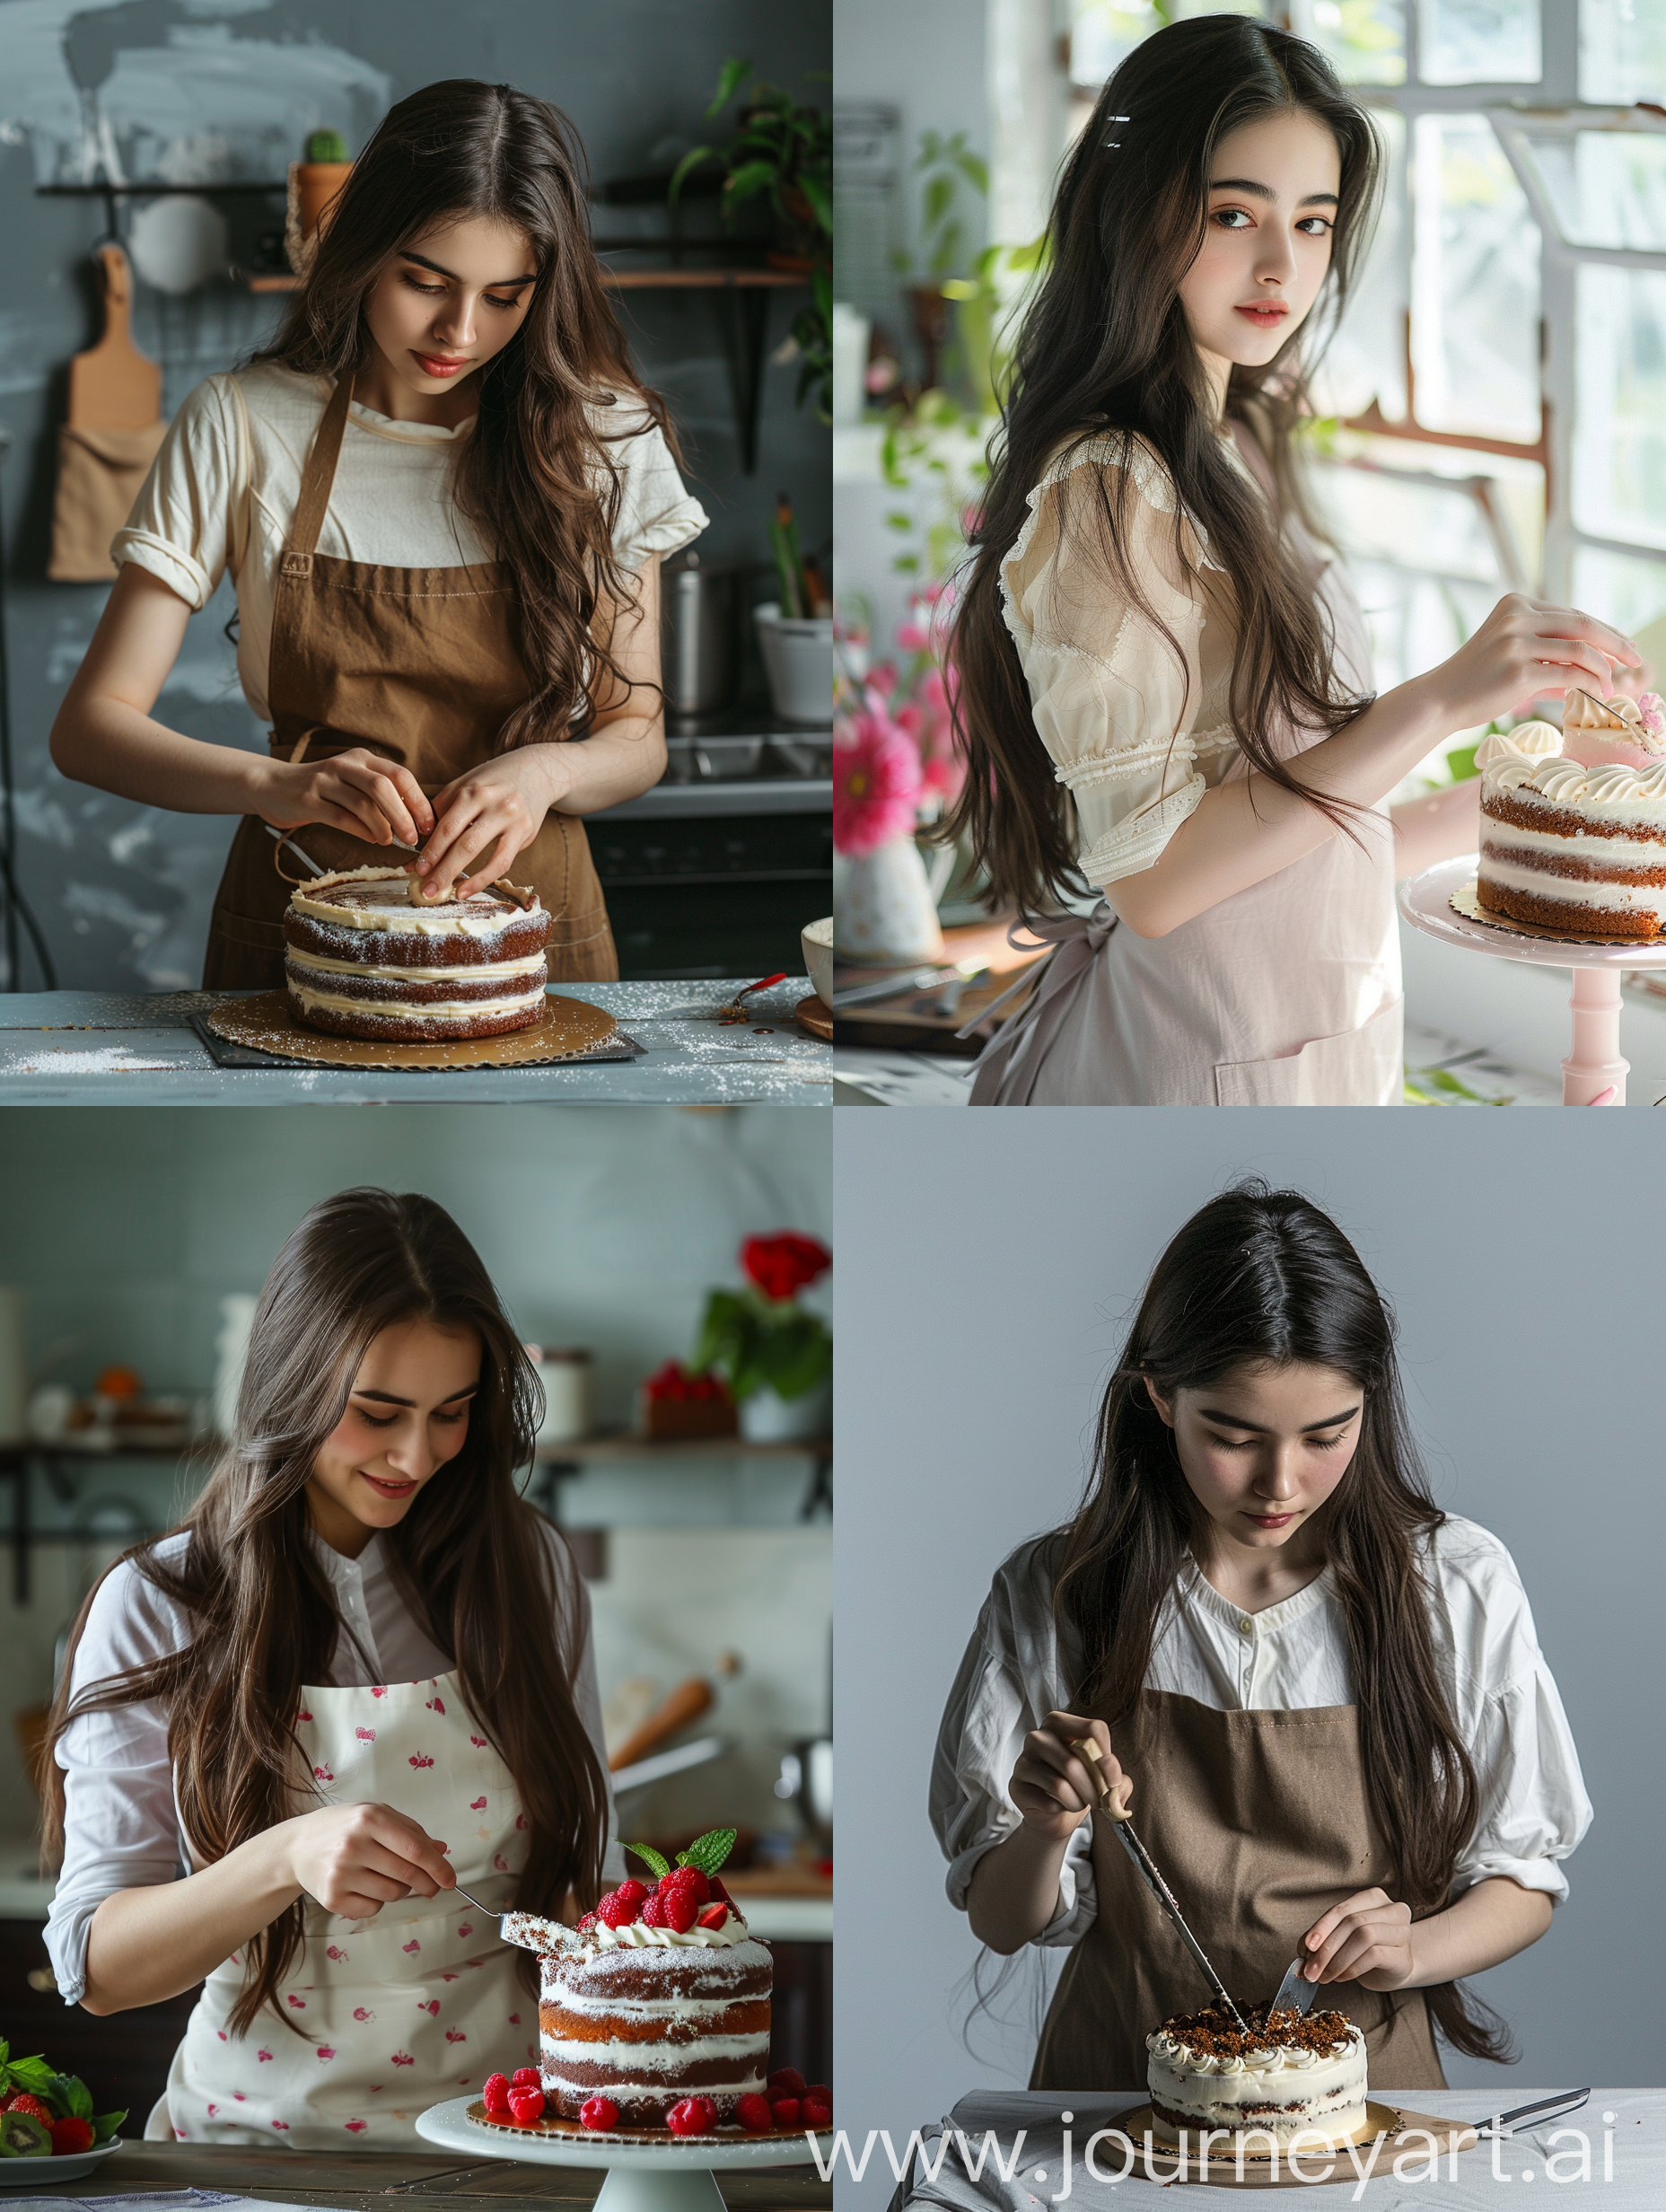 профессиональная съемка, девушка брюнетка с длинными волосами, готовит торт, игривая, фартук на 